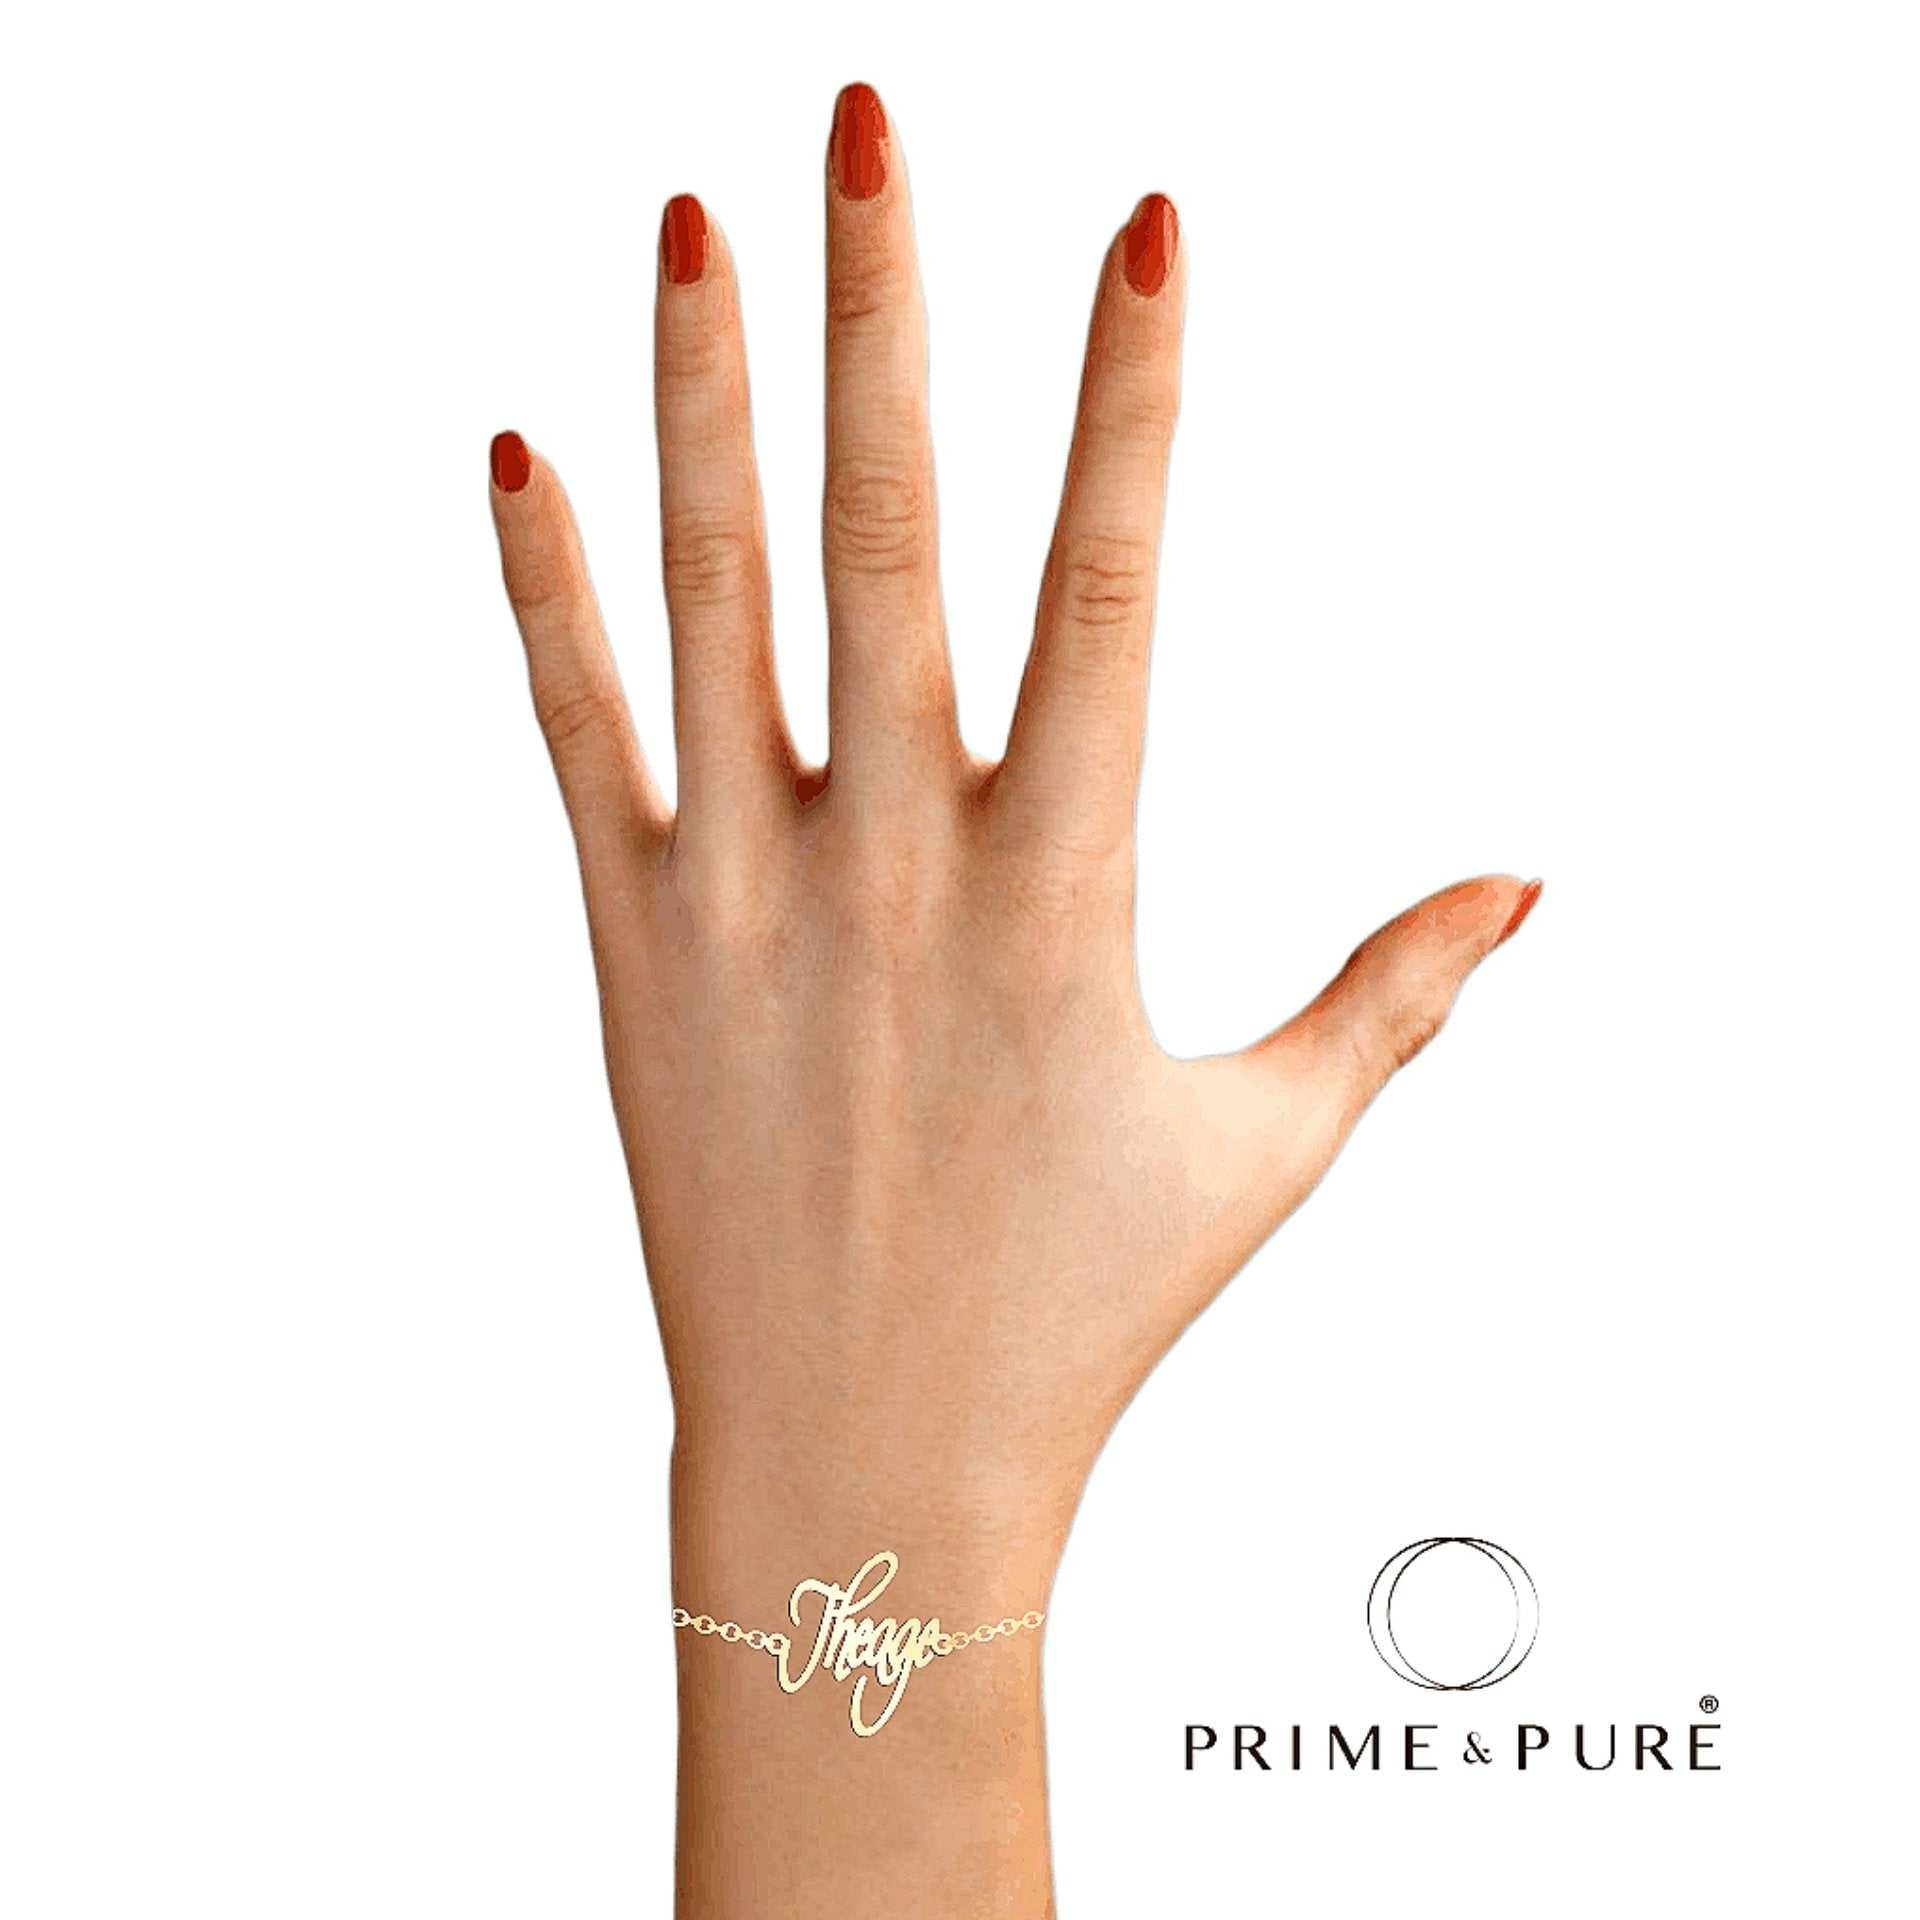 MyAge Name Bracelet - Prime & Pure